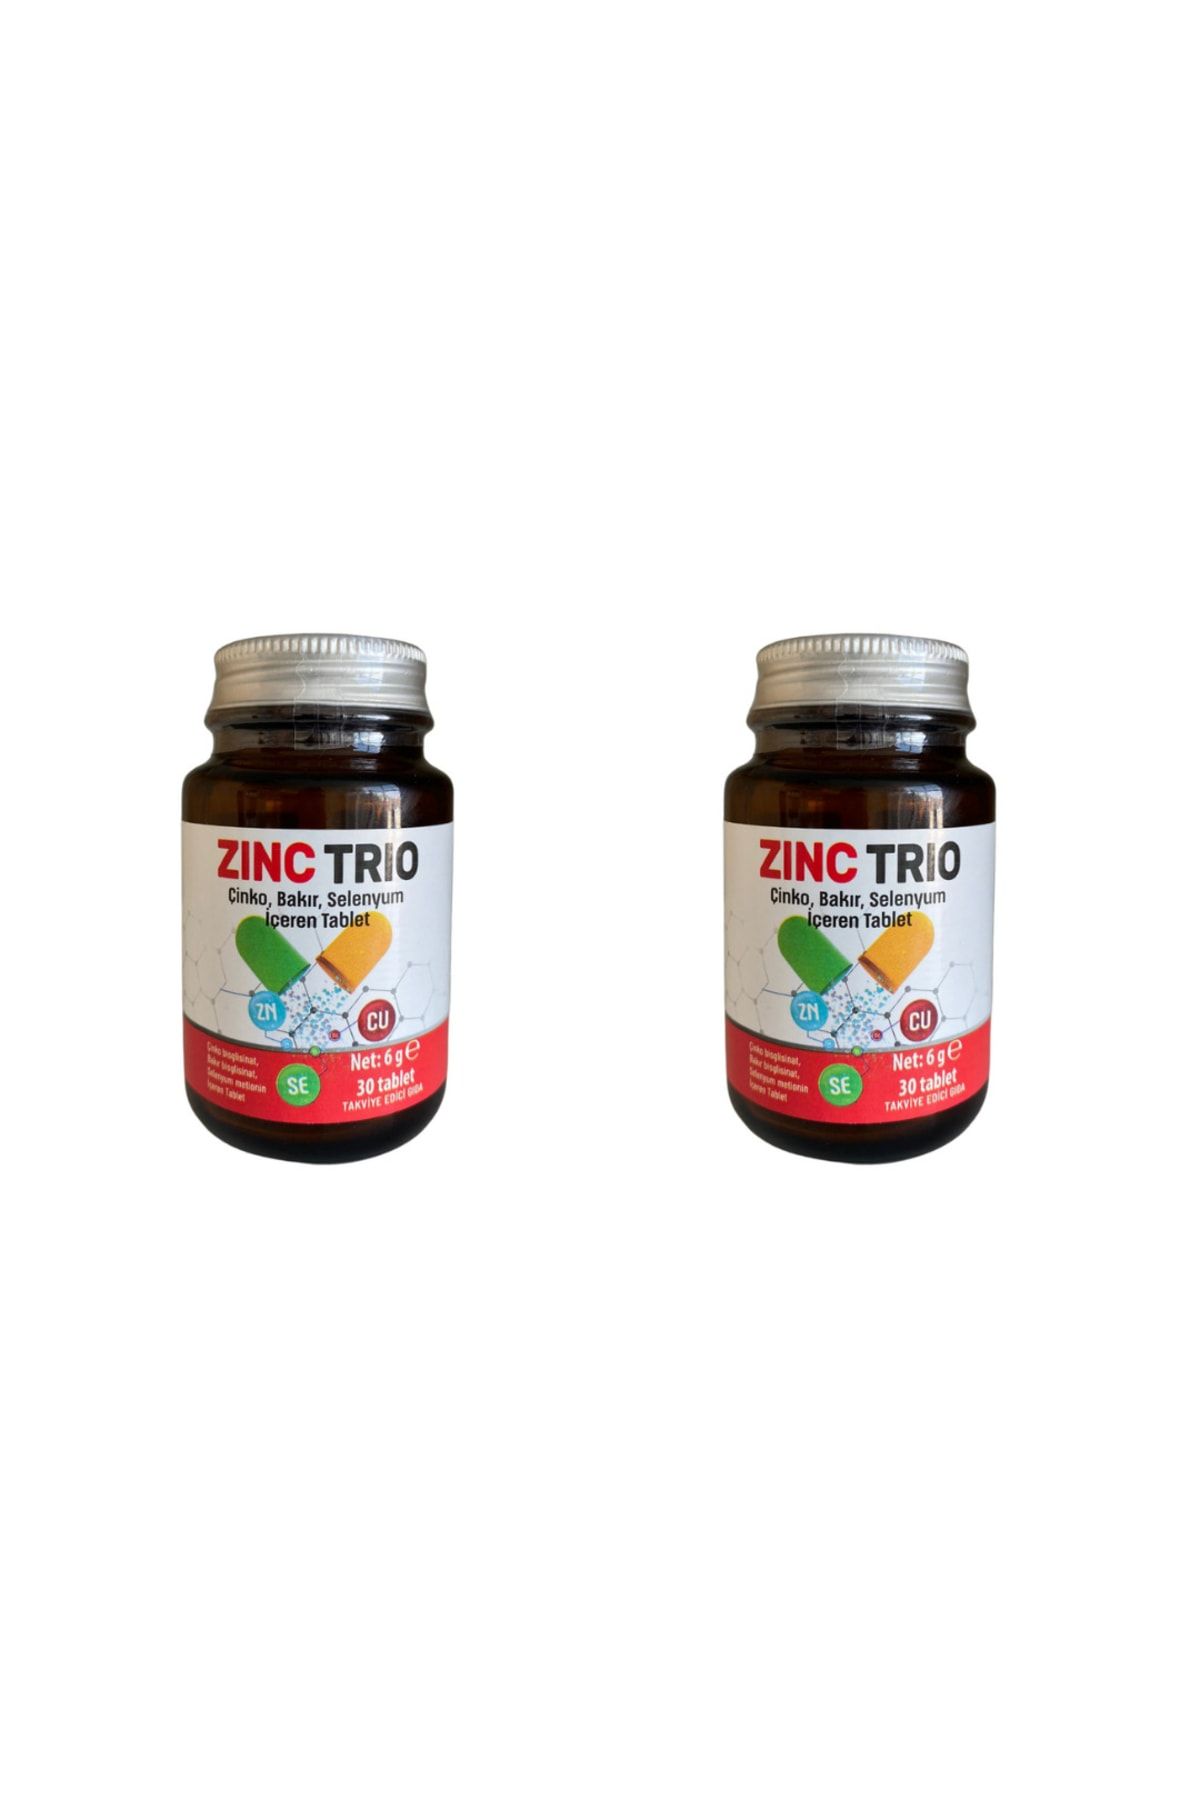 ZINC TRIO Zinctrio Çinko Bakır Selenyum İçeren 30 Tablet 2 Adet